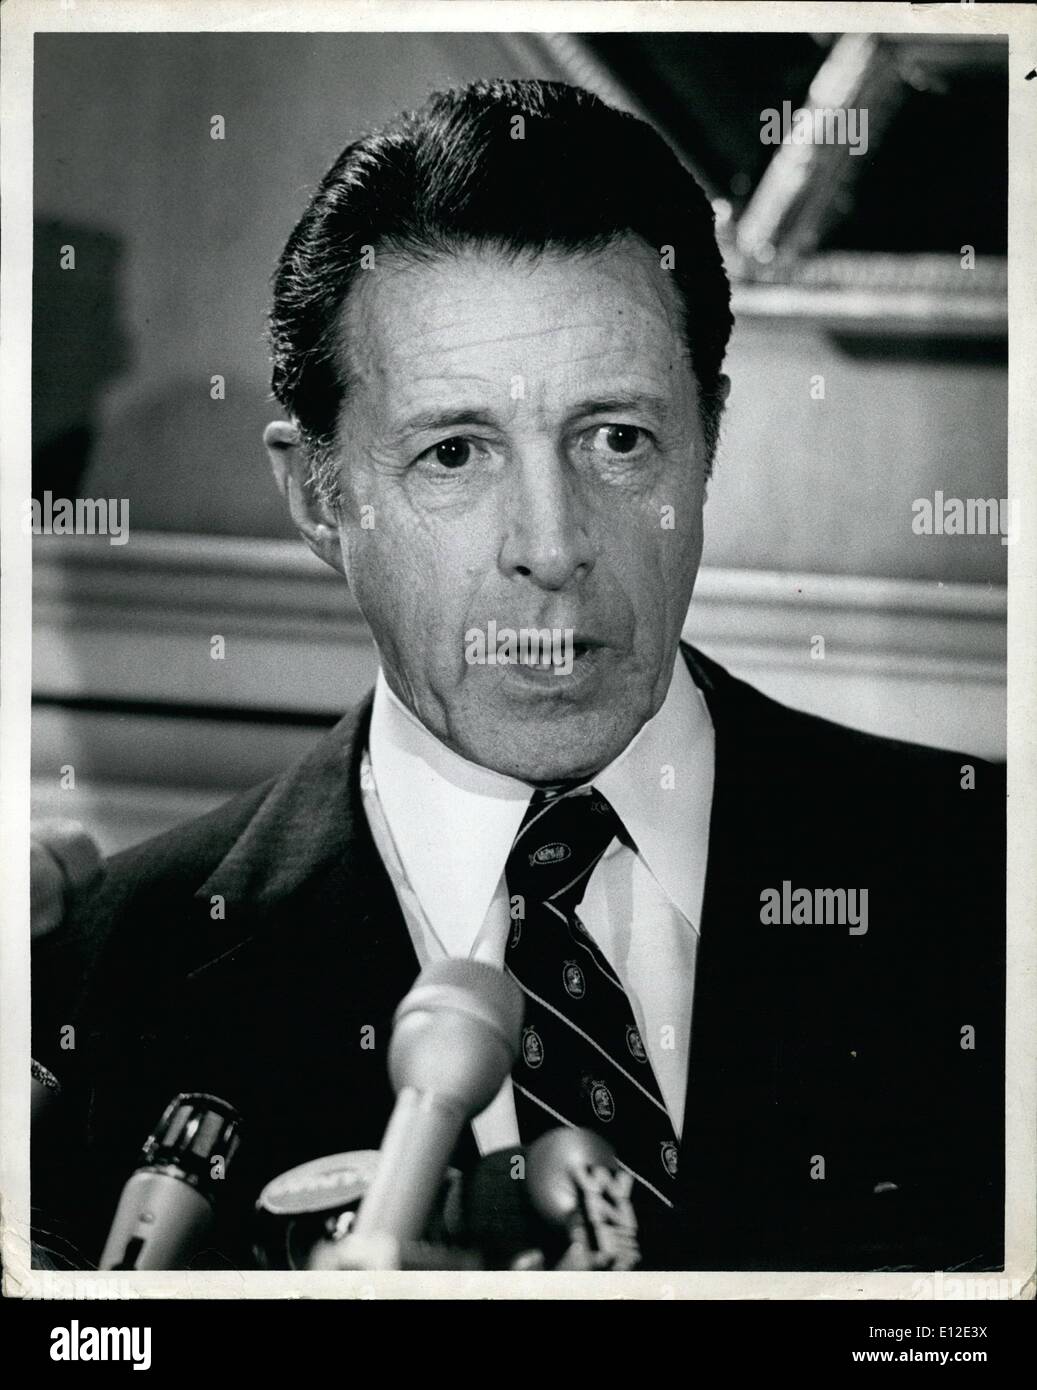 20 dicembre 2011 - Aprile 1982 New York City. Gli Stati Uniti il Segretario della Difesa Caspar Weinberger ha tenuto una conferenza stampa durante uno dei suoi numerosi viaggi a New York. OPS: Dr. Weinberger durante la sua conferenza stampa. Foto Stock